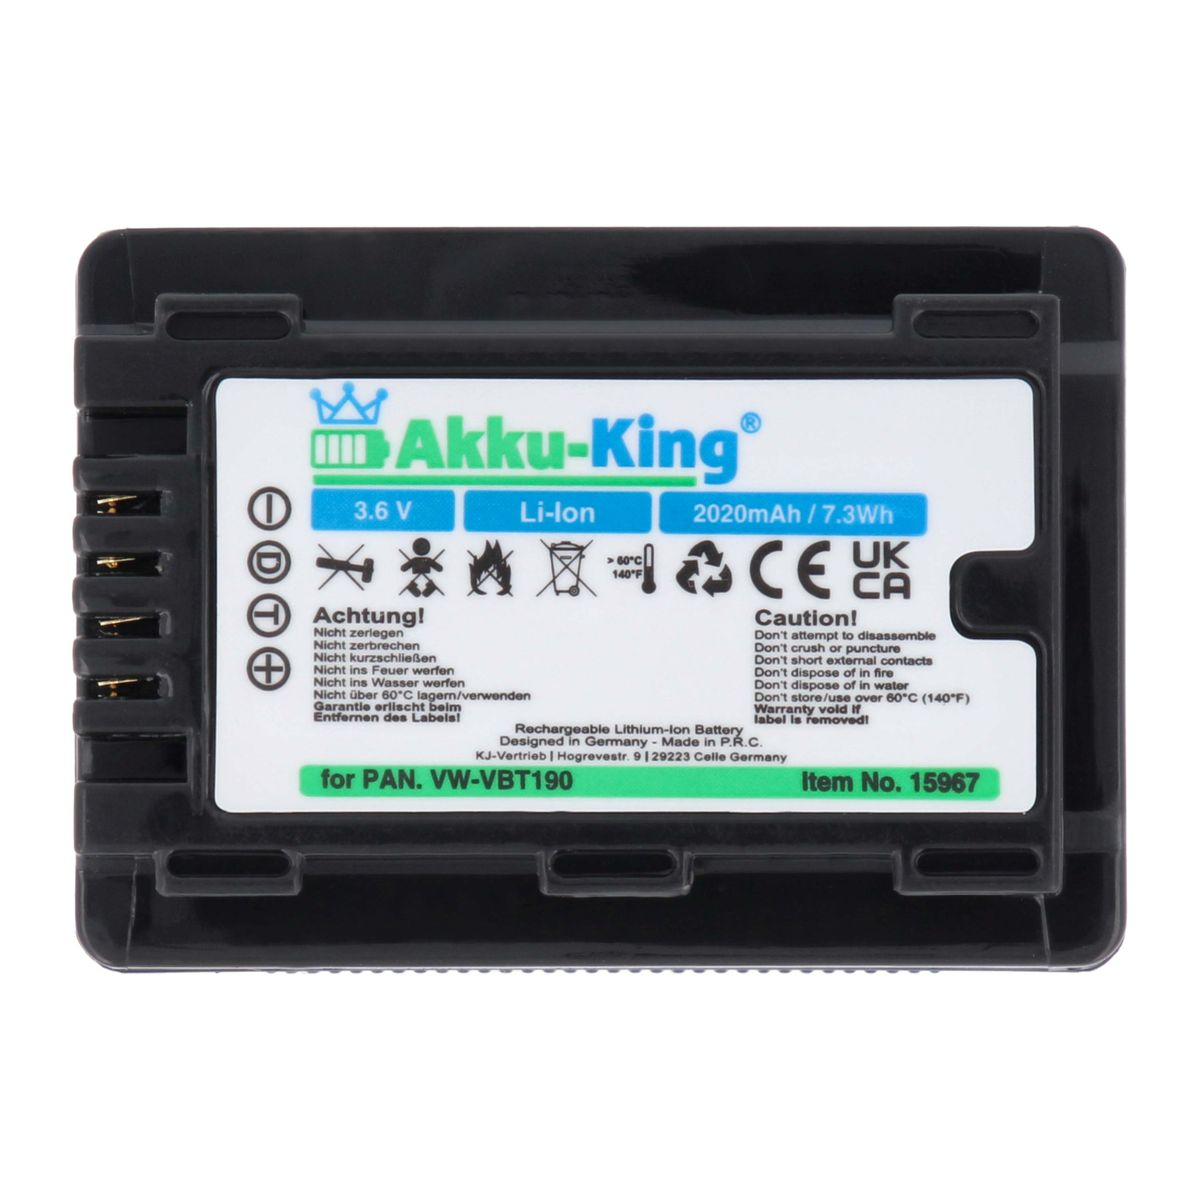 AKKU-KING Akku kompatibel mit VW-VBT190 2020mAh Li-Ion 3.6 Panasonic Volt, Kamera-Akku